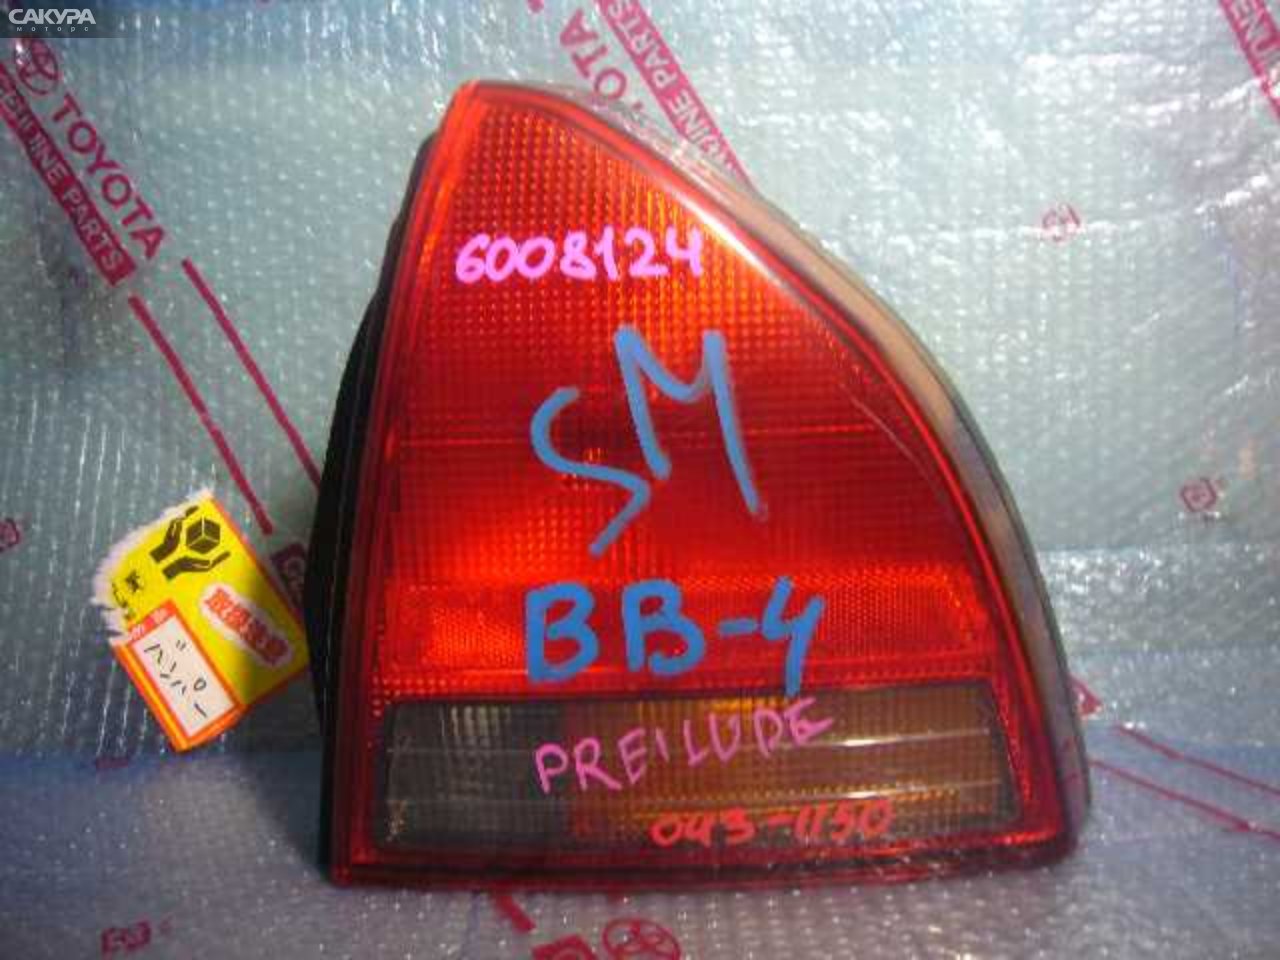 Фонарь стоп-сигнала правый Honda Prelude BB4 043-1150: купить в Сакура Кемерово.